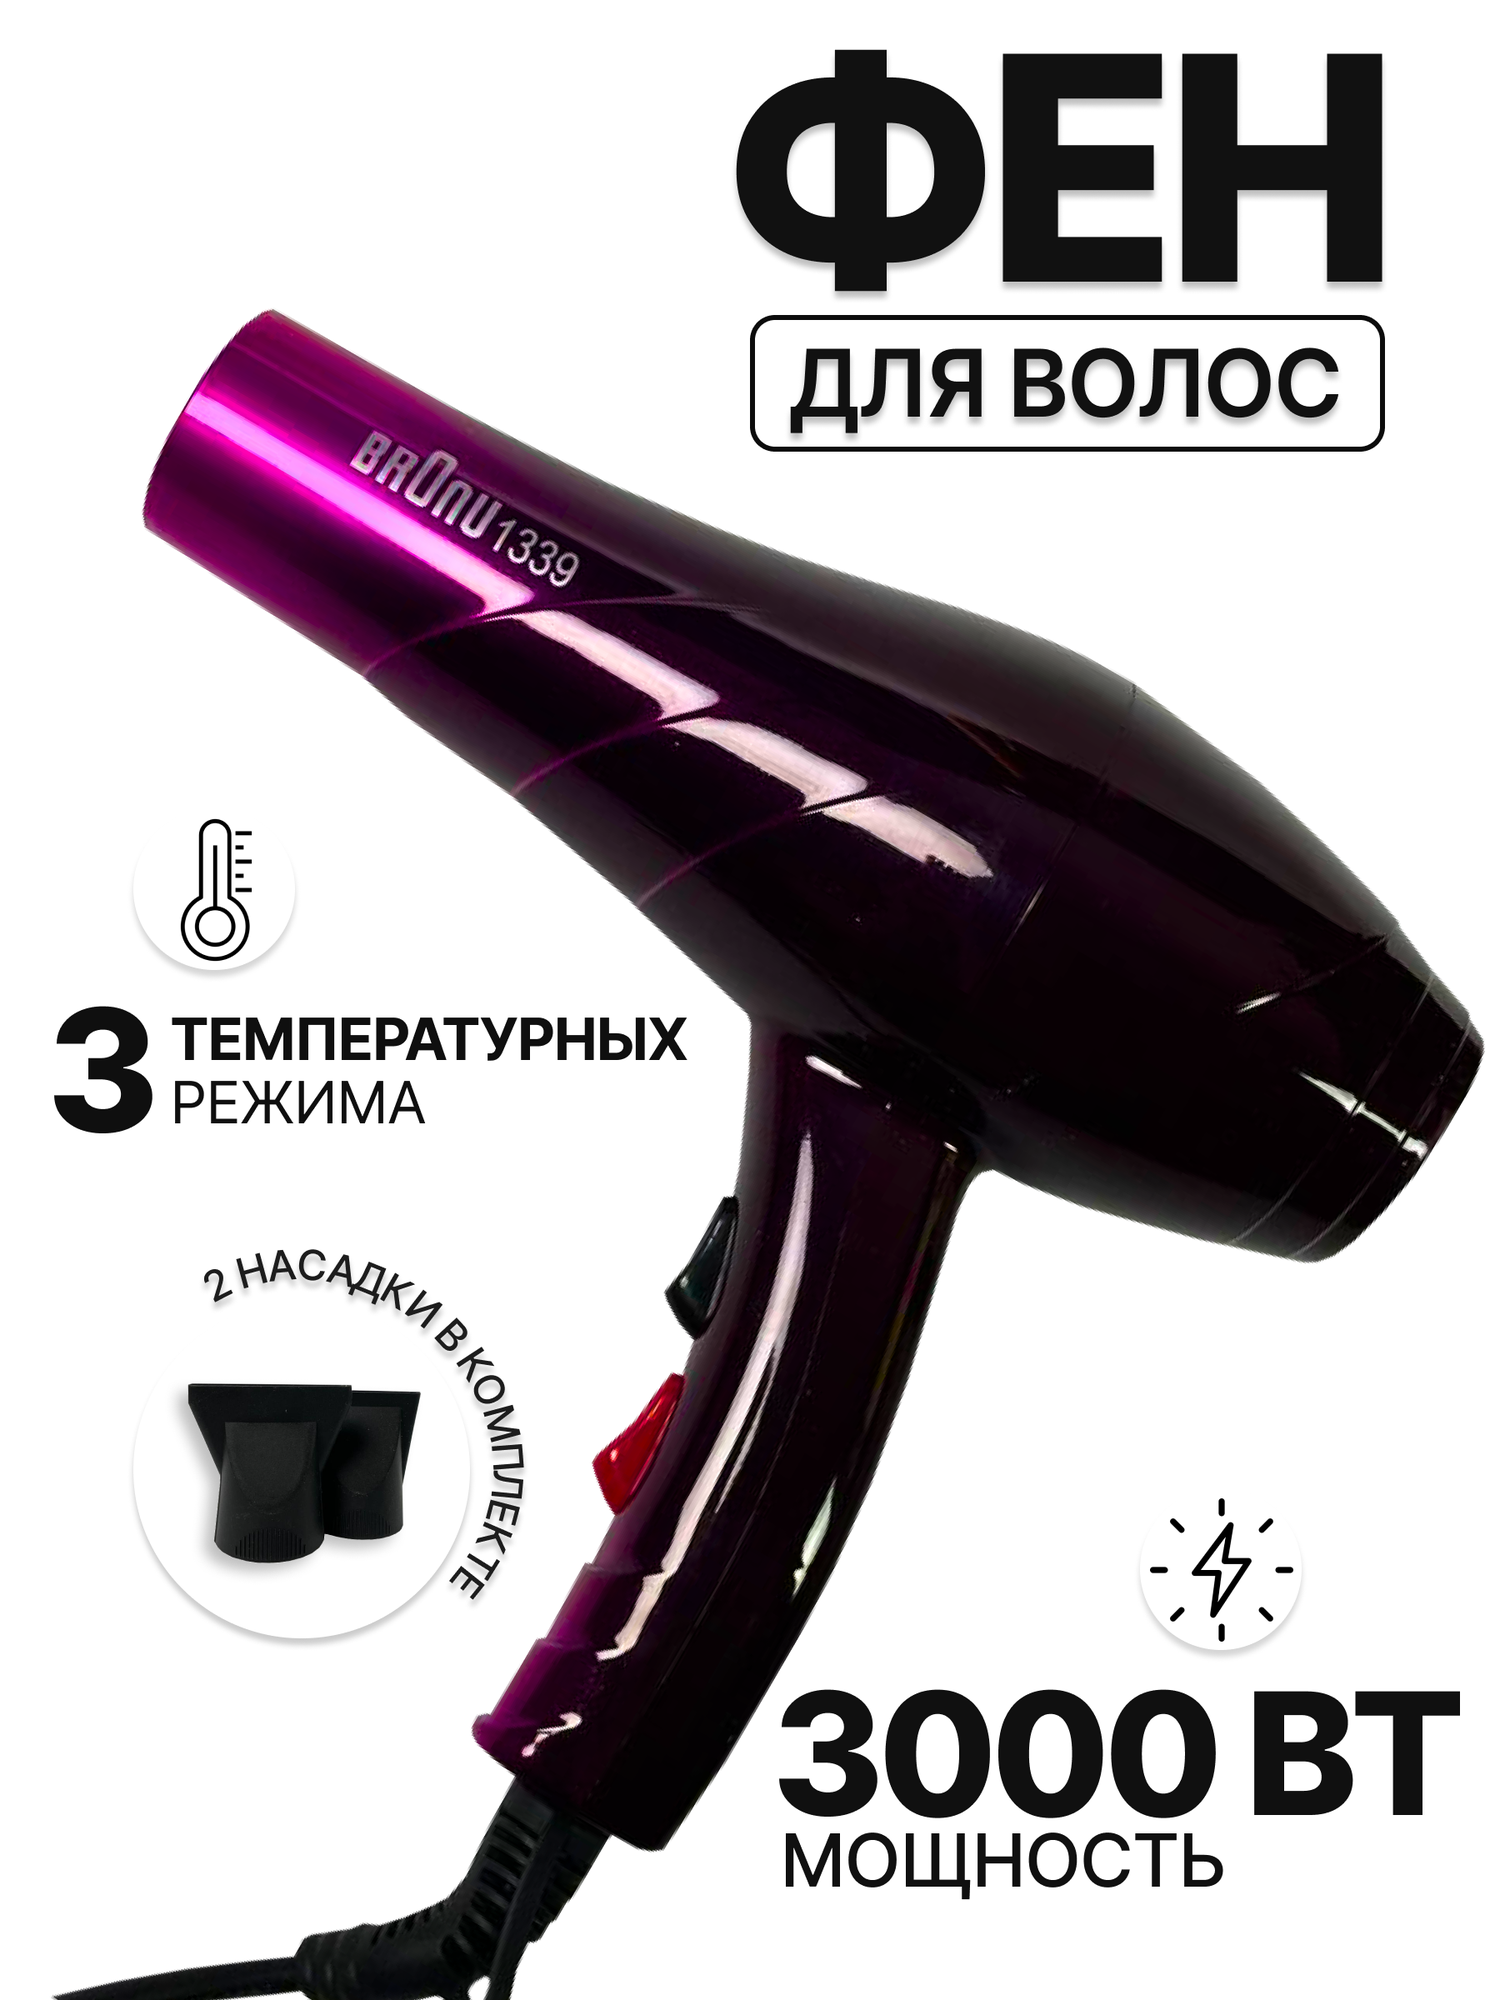 Фен для волос фиолетовый 2000Вт